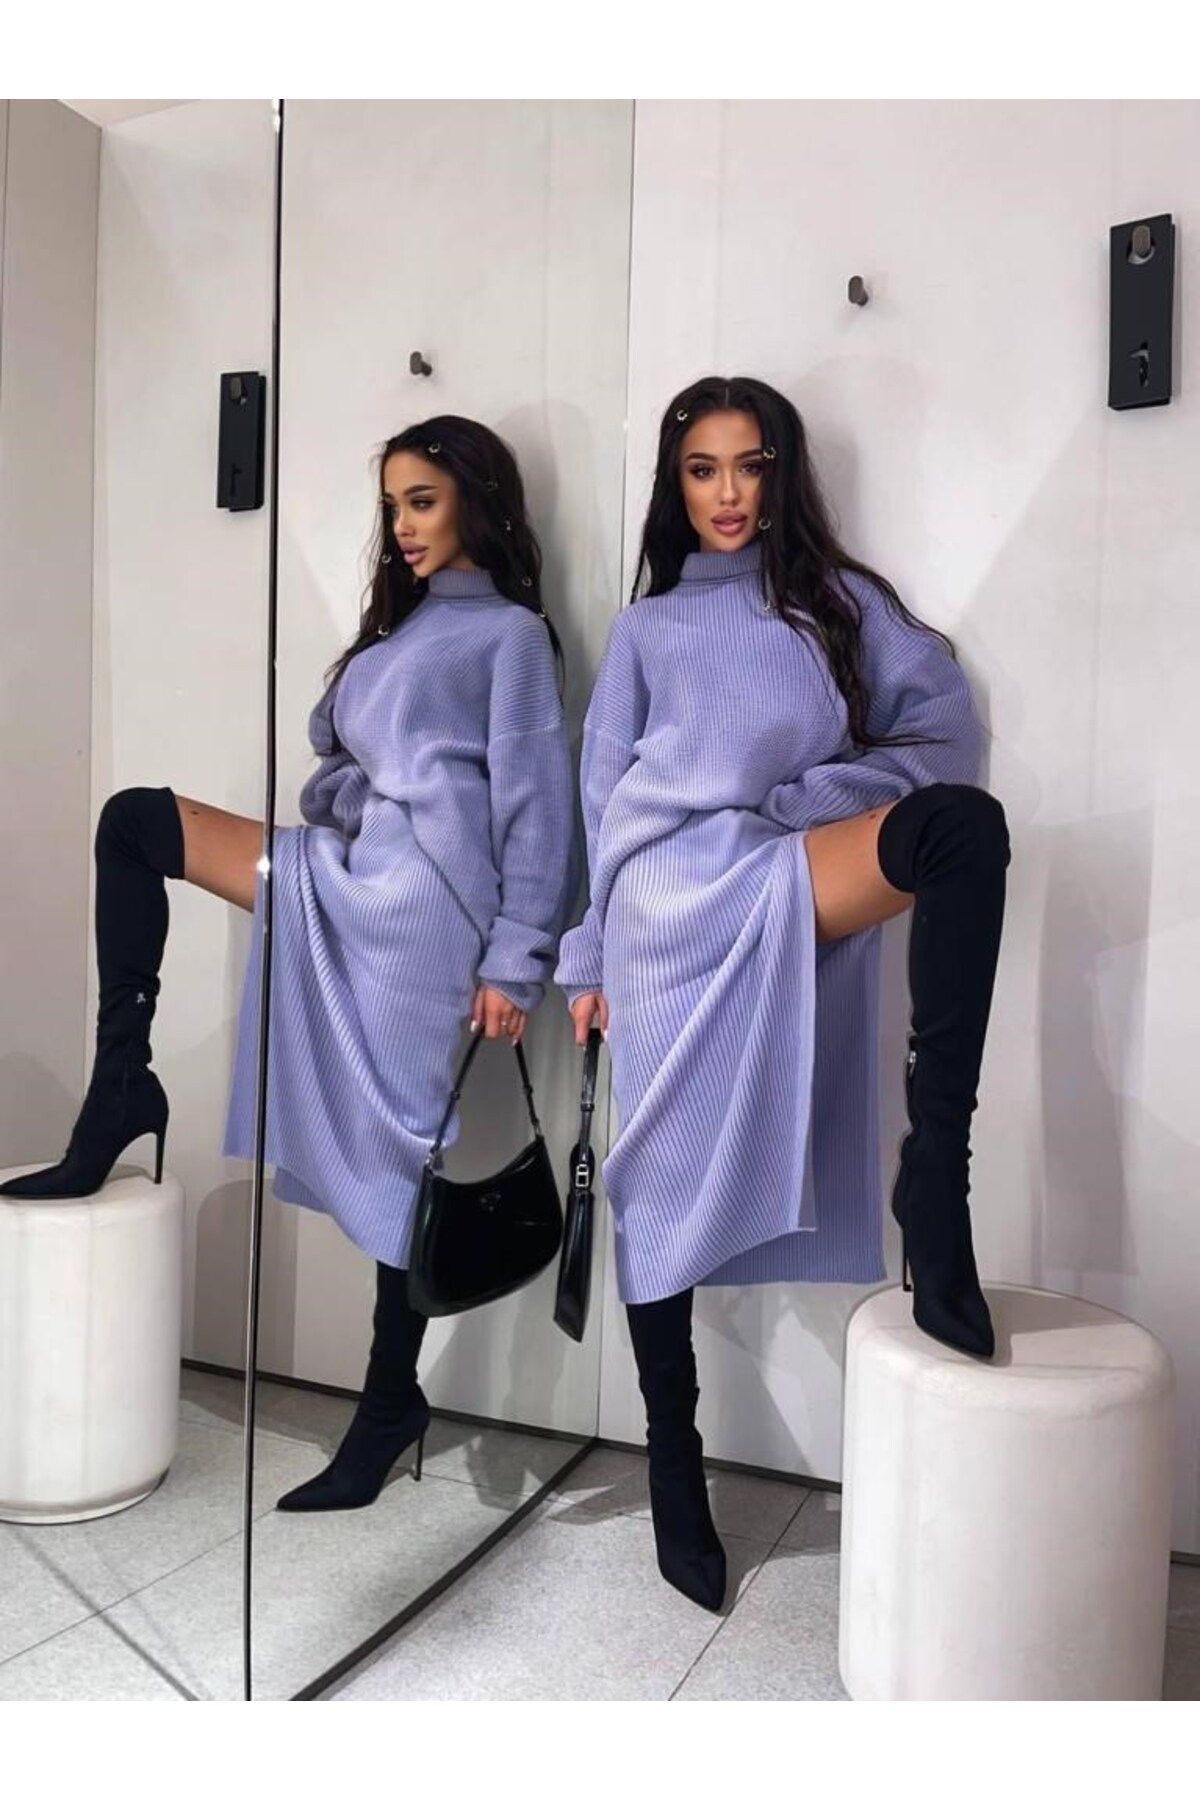 The Champ Clothing Triko Örme Yırtmaçlı Etek- Kazak Takım